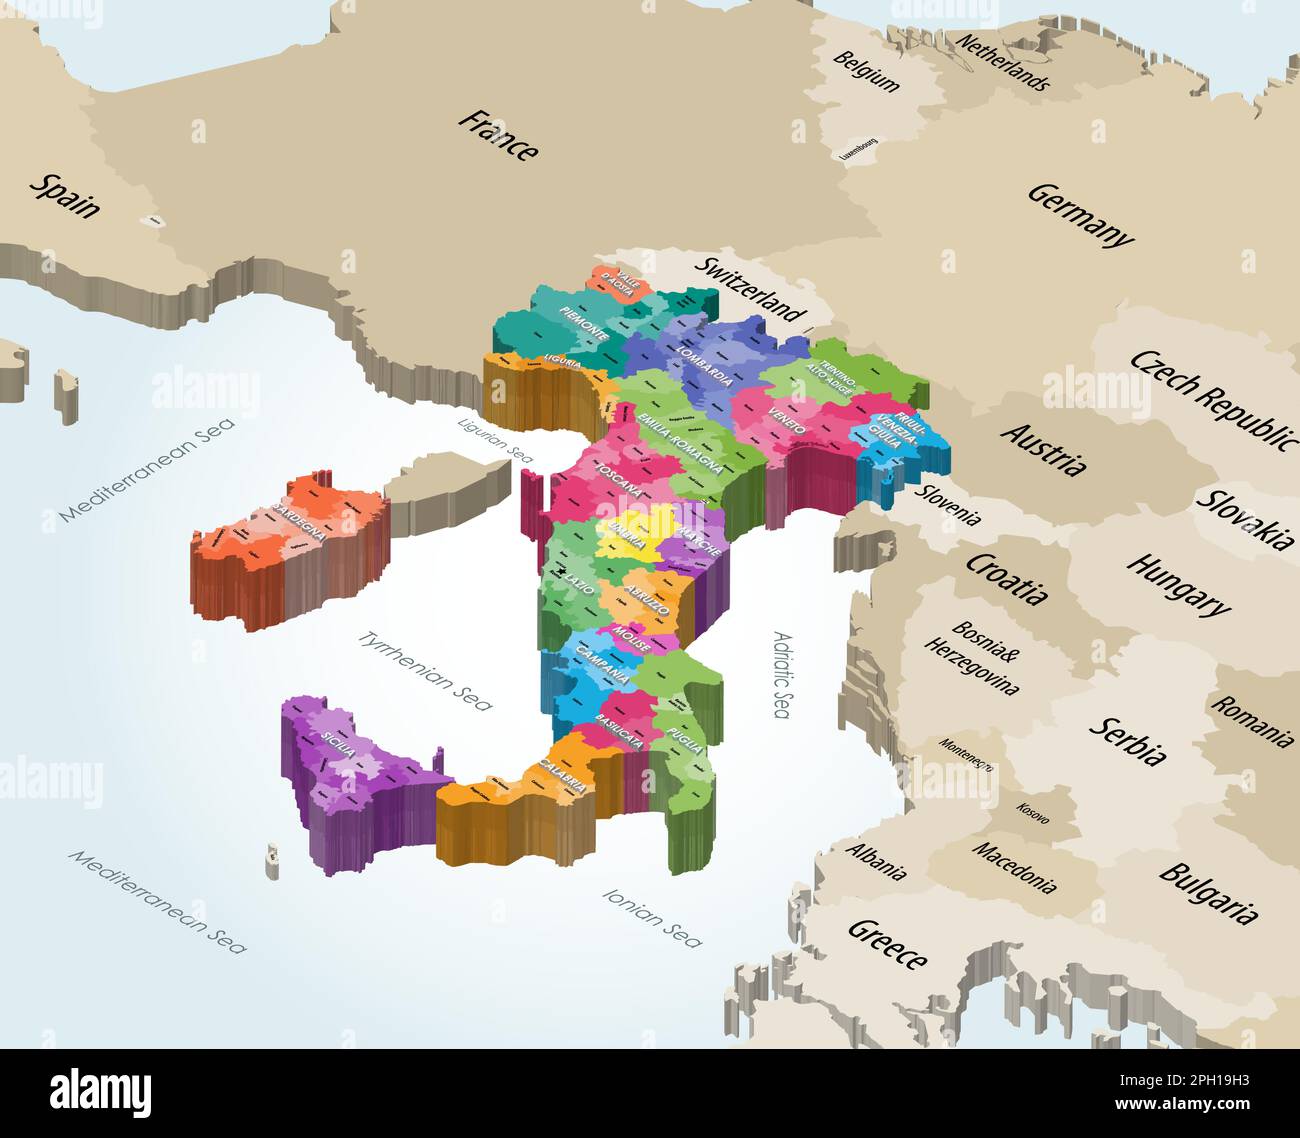 Italien Isometrische Karte der Gemeinden, die nach Verwaltungsregionen mit Nachbarländern farblich gekennzeichnet ist Stock Vektor